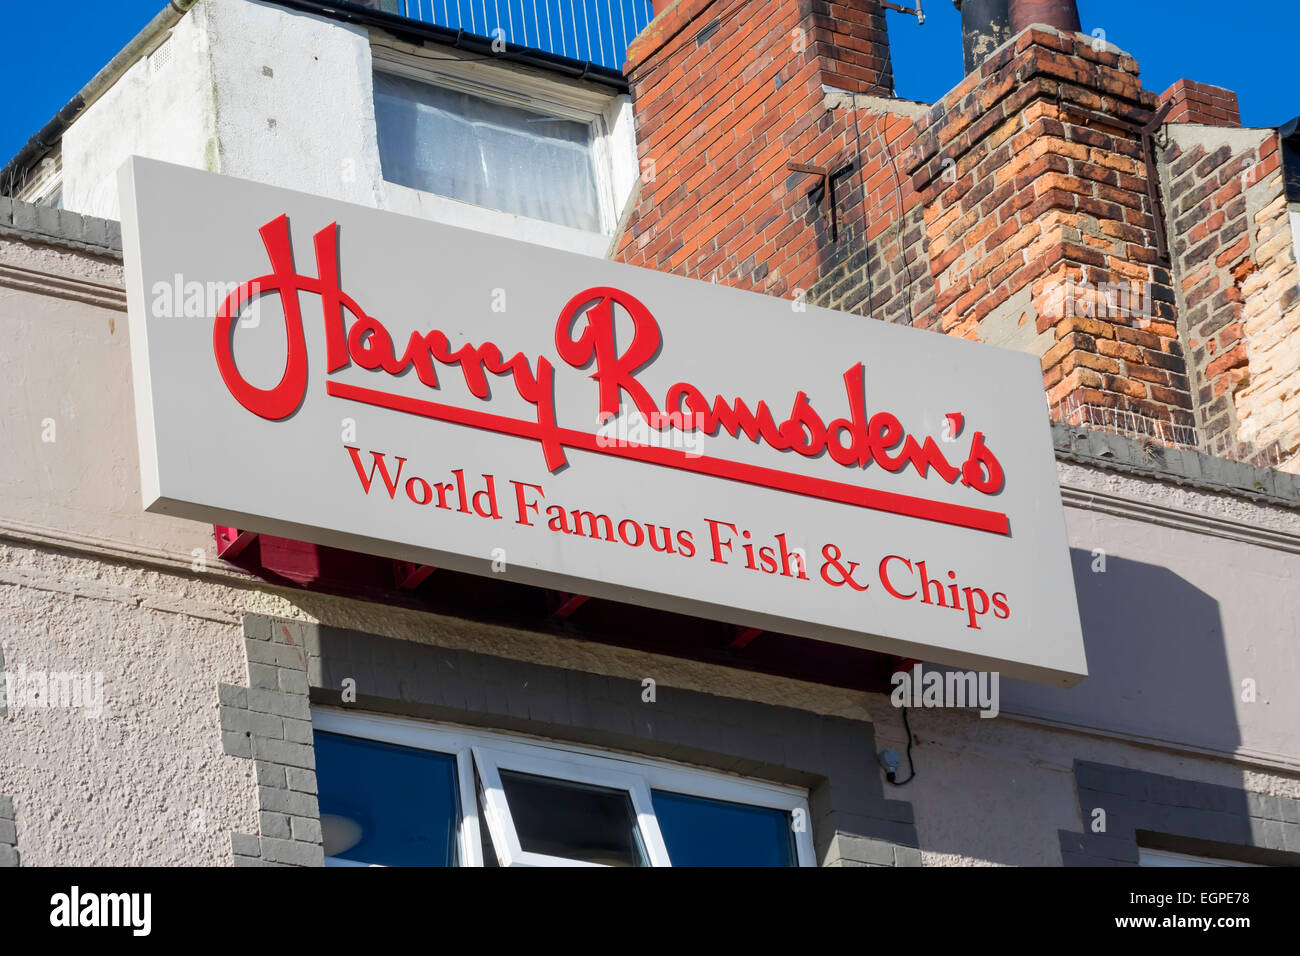 Melden Sie sich für eine Franchise von "Harry Ramsdens" berühmte Fisch und chip-Shop Scarborough, Großbritannien Stockfoto